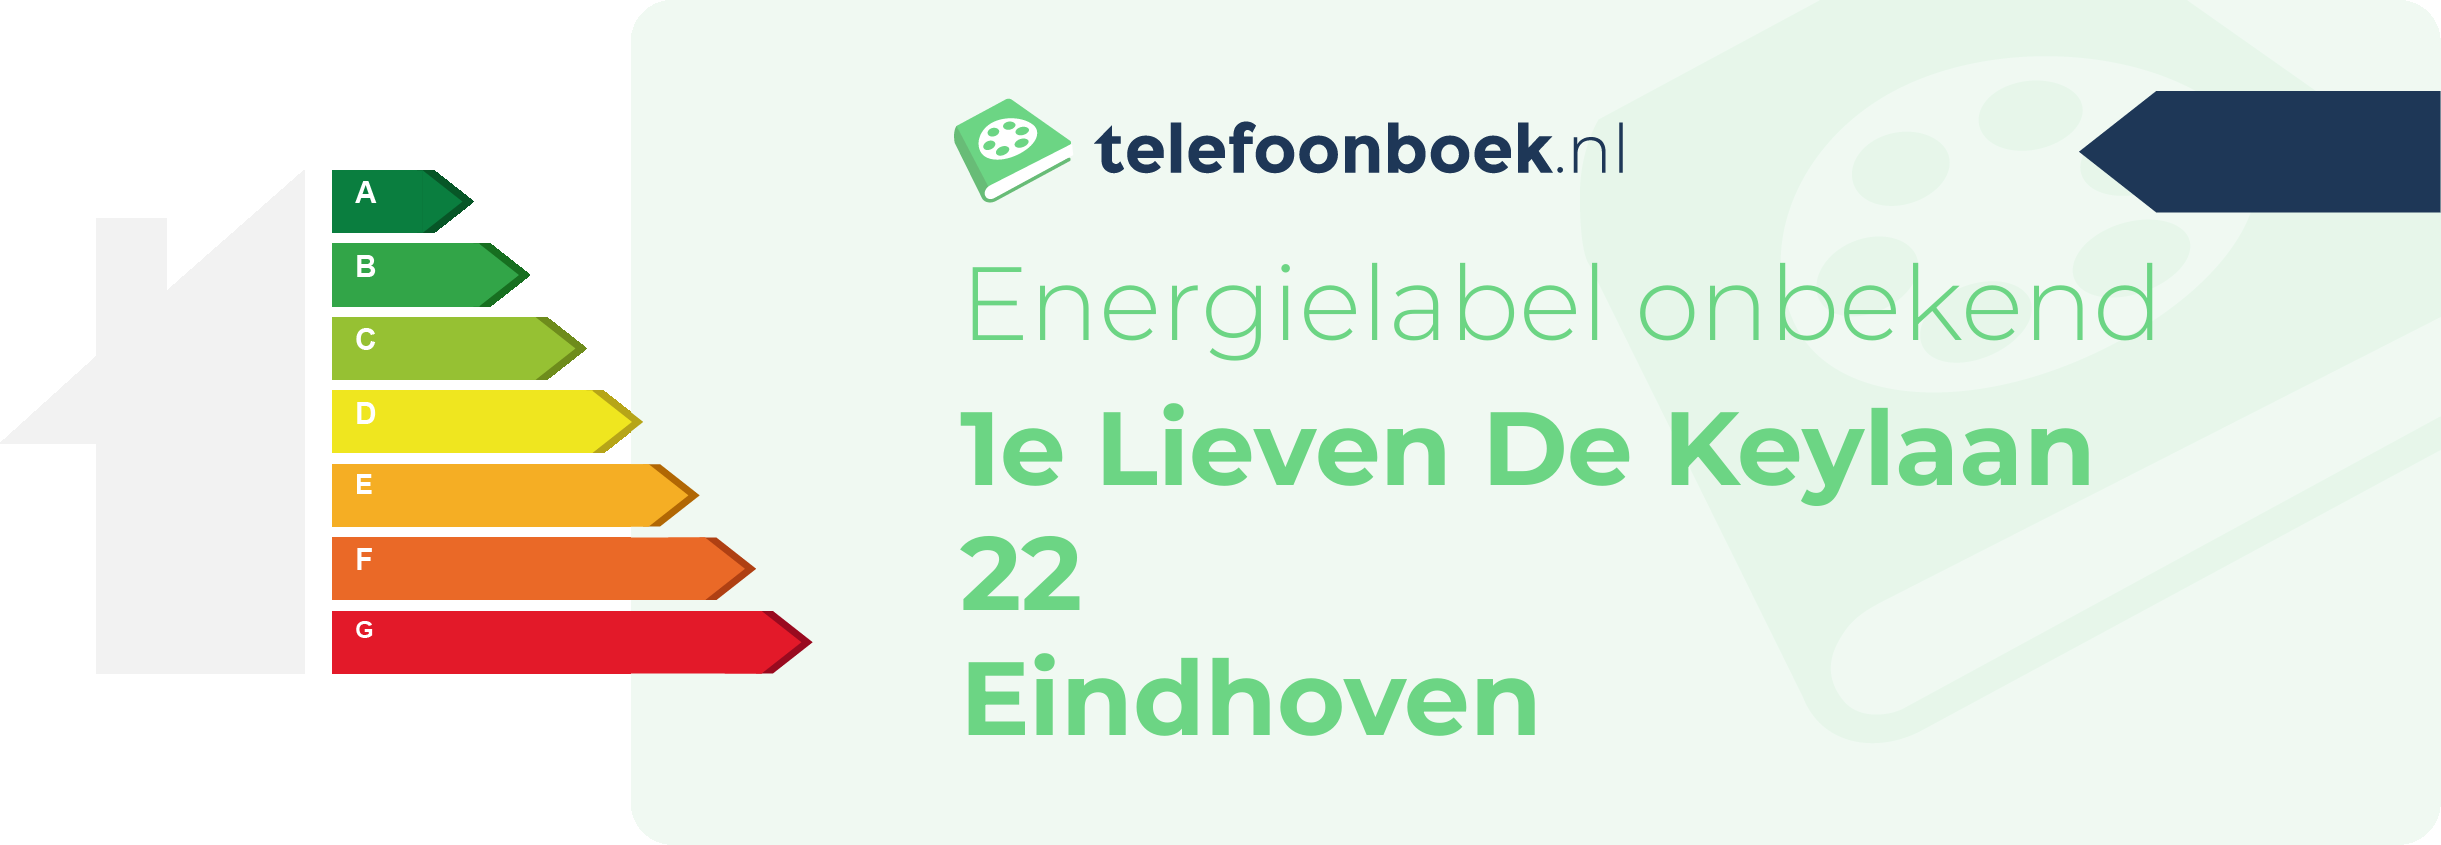 Energielabel 1e Lieven De Keylaan 22 Eindhoven